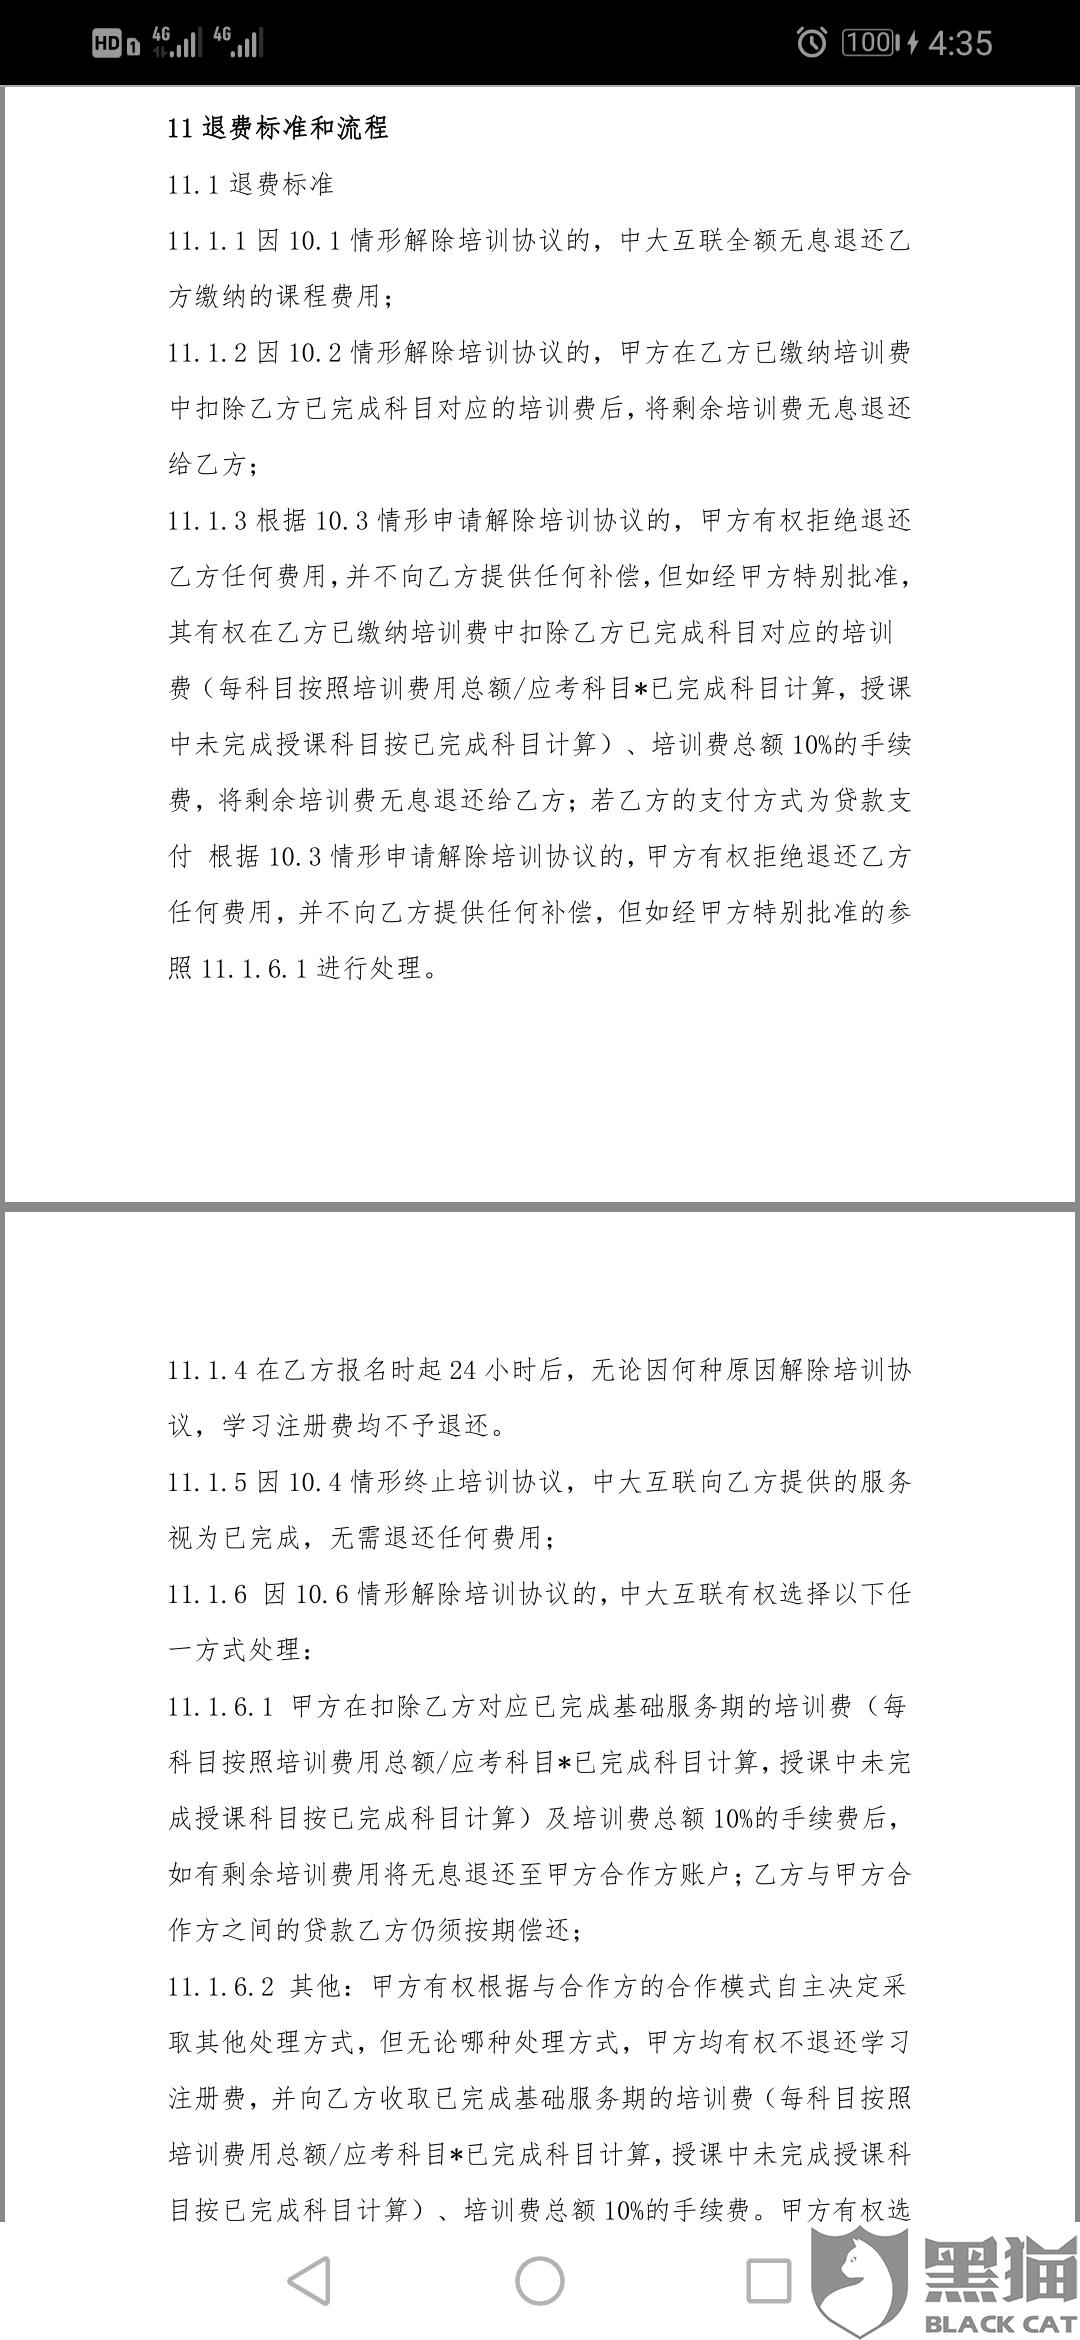 黑猫投诉：广州师德皓大教育科技有限公司未按承诺退款，引导有钱花借贷。（已解决）